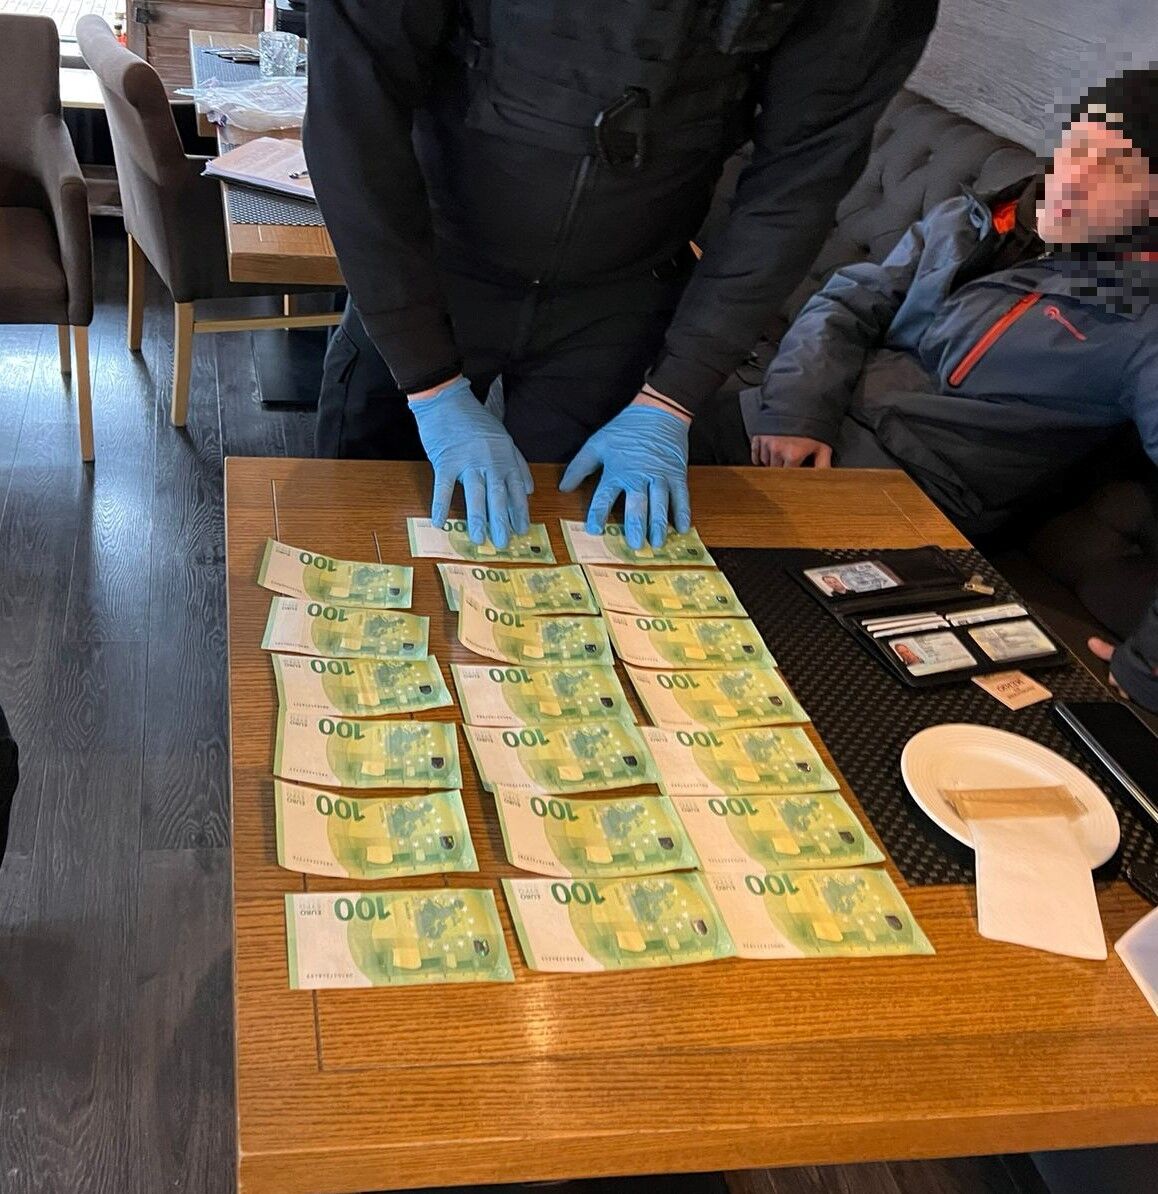 У Києві затримали чоловіка, який за 2 тис. євро продавав доступ до конфіденційної інформації українців. Фото